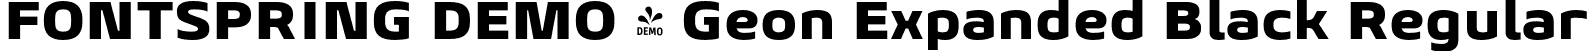 FONTSPRING DEMO - Geon Expanded Black Regular font | Fontspring-DEMO-geonexpanded-black.otf